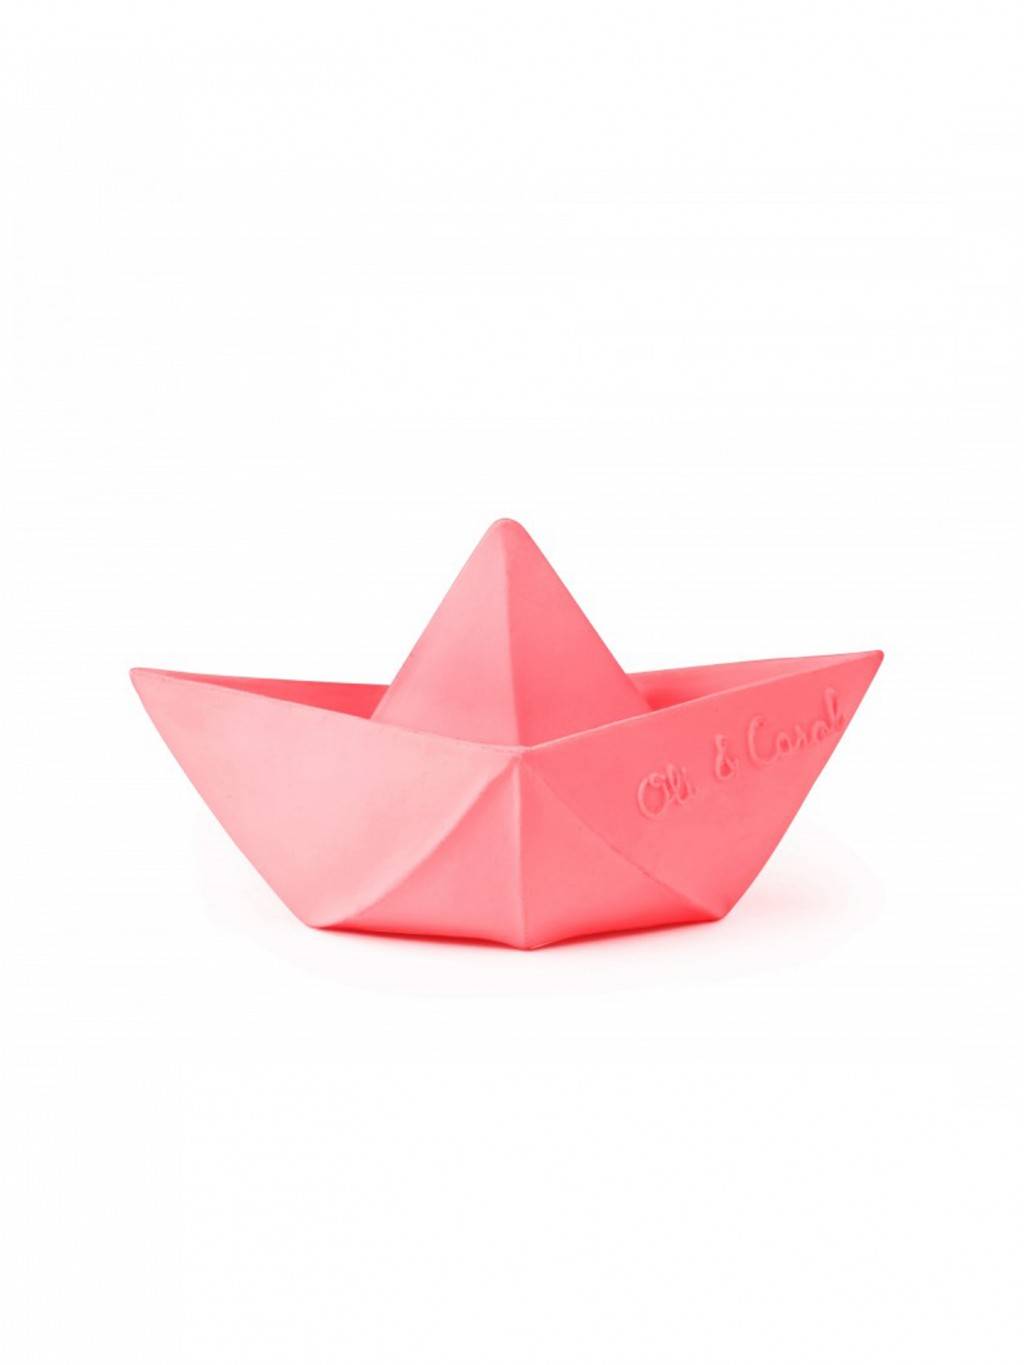 barco origami cor de rosa Oli&Carol 15.25euros